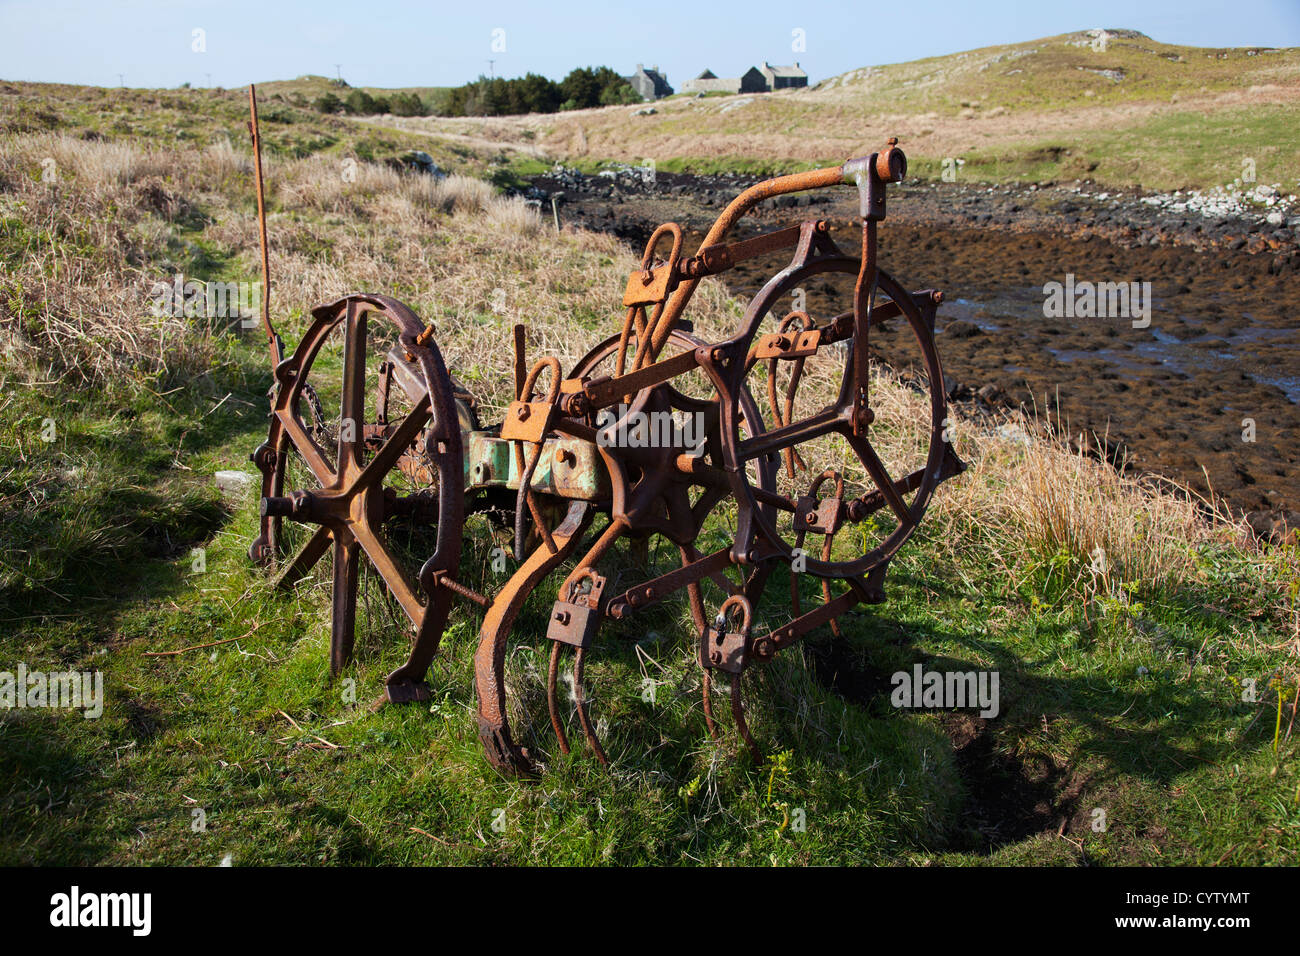 Rusty vieja maquinaria agrícola abandonado en un campo cercano, Benbecular Flodaigh en Outer Hebrides, Scotland, Reino Unido Foto de stock